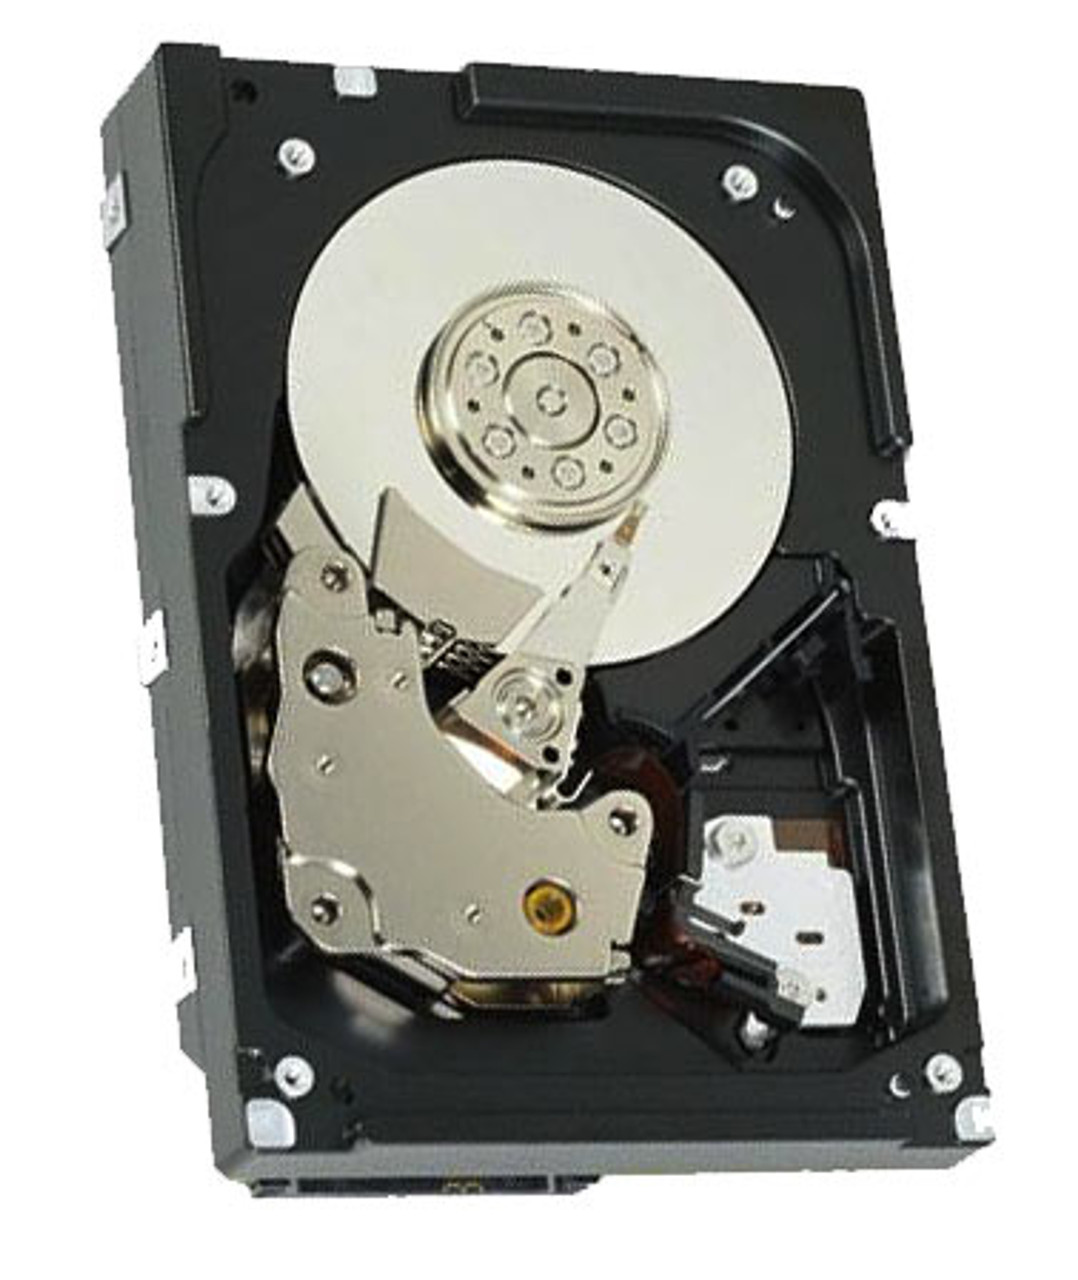 10N7200 - IBM 73GB 15000RPM 3.5-inch SAS Hard Drive